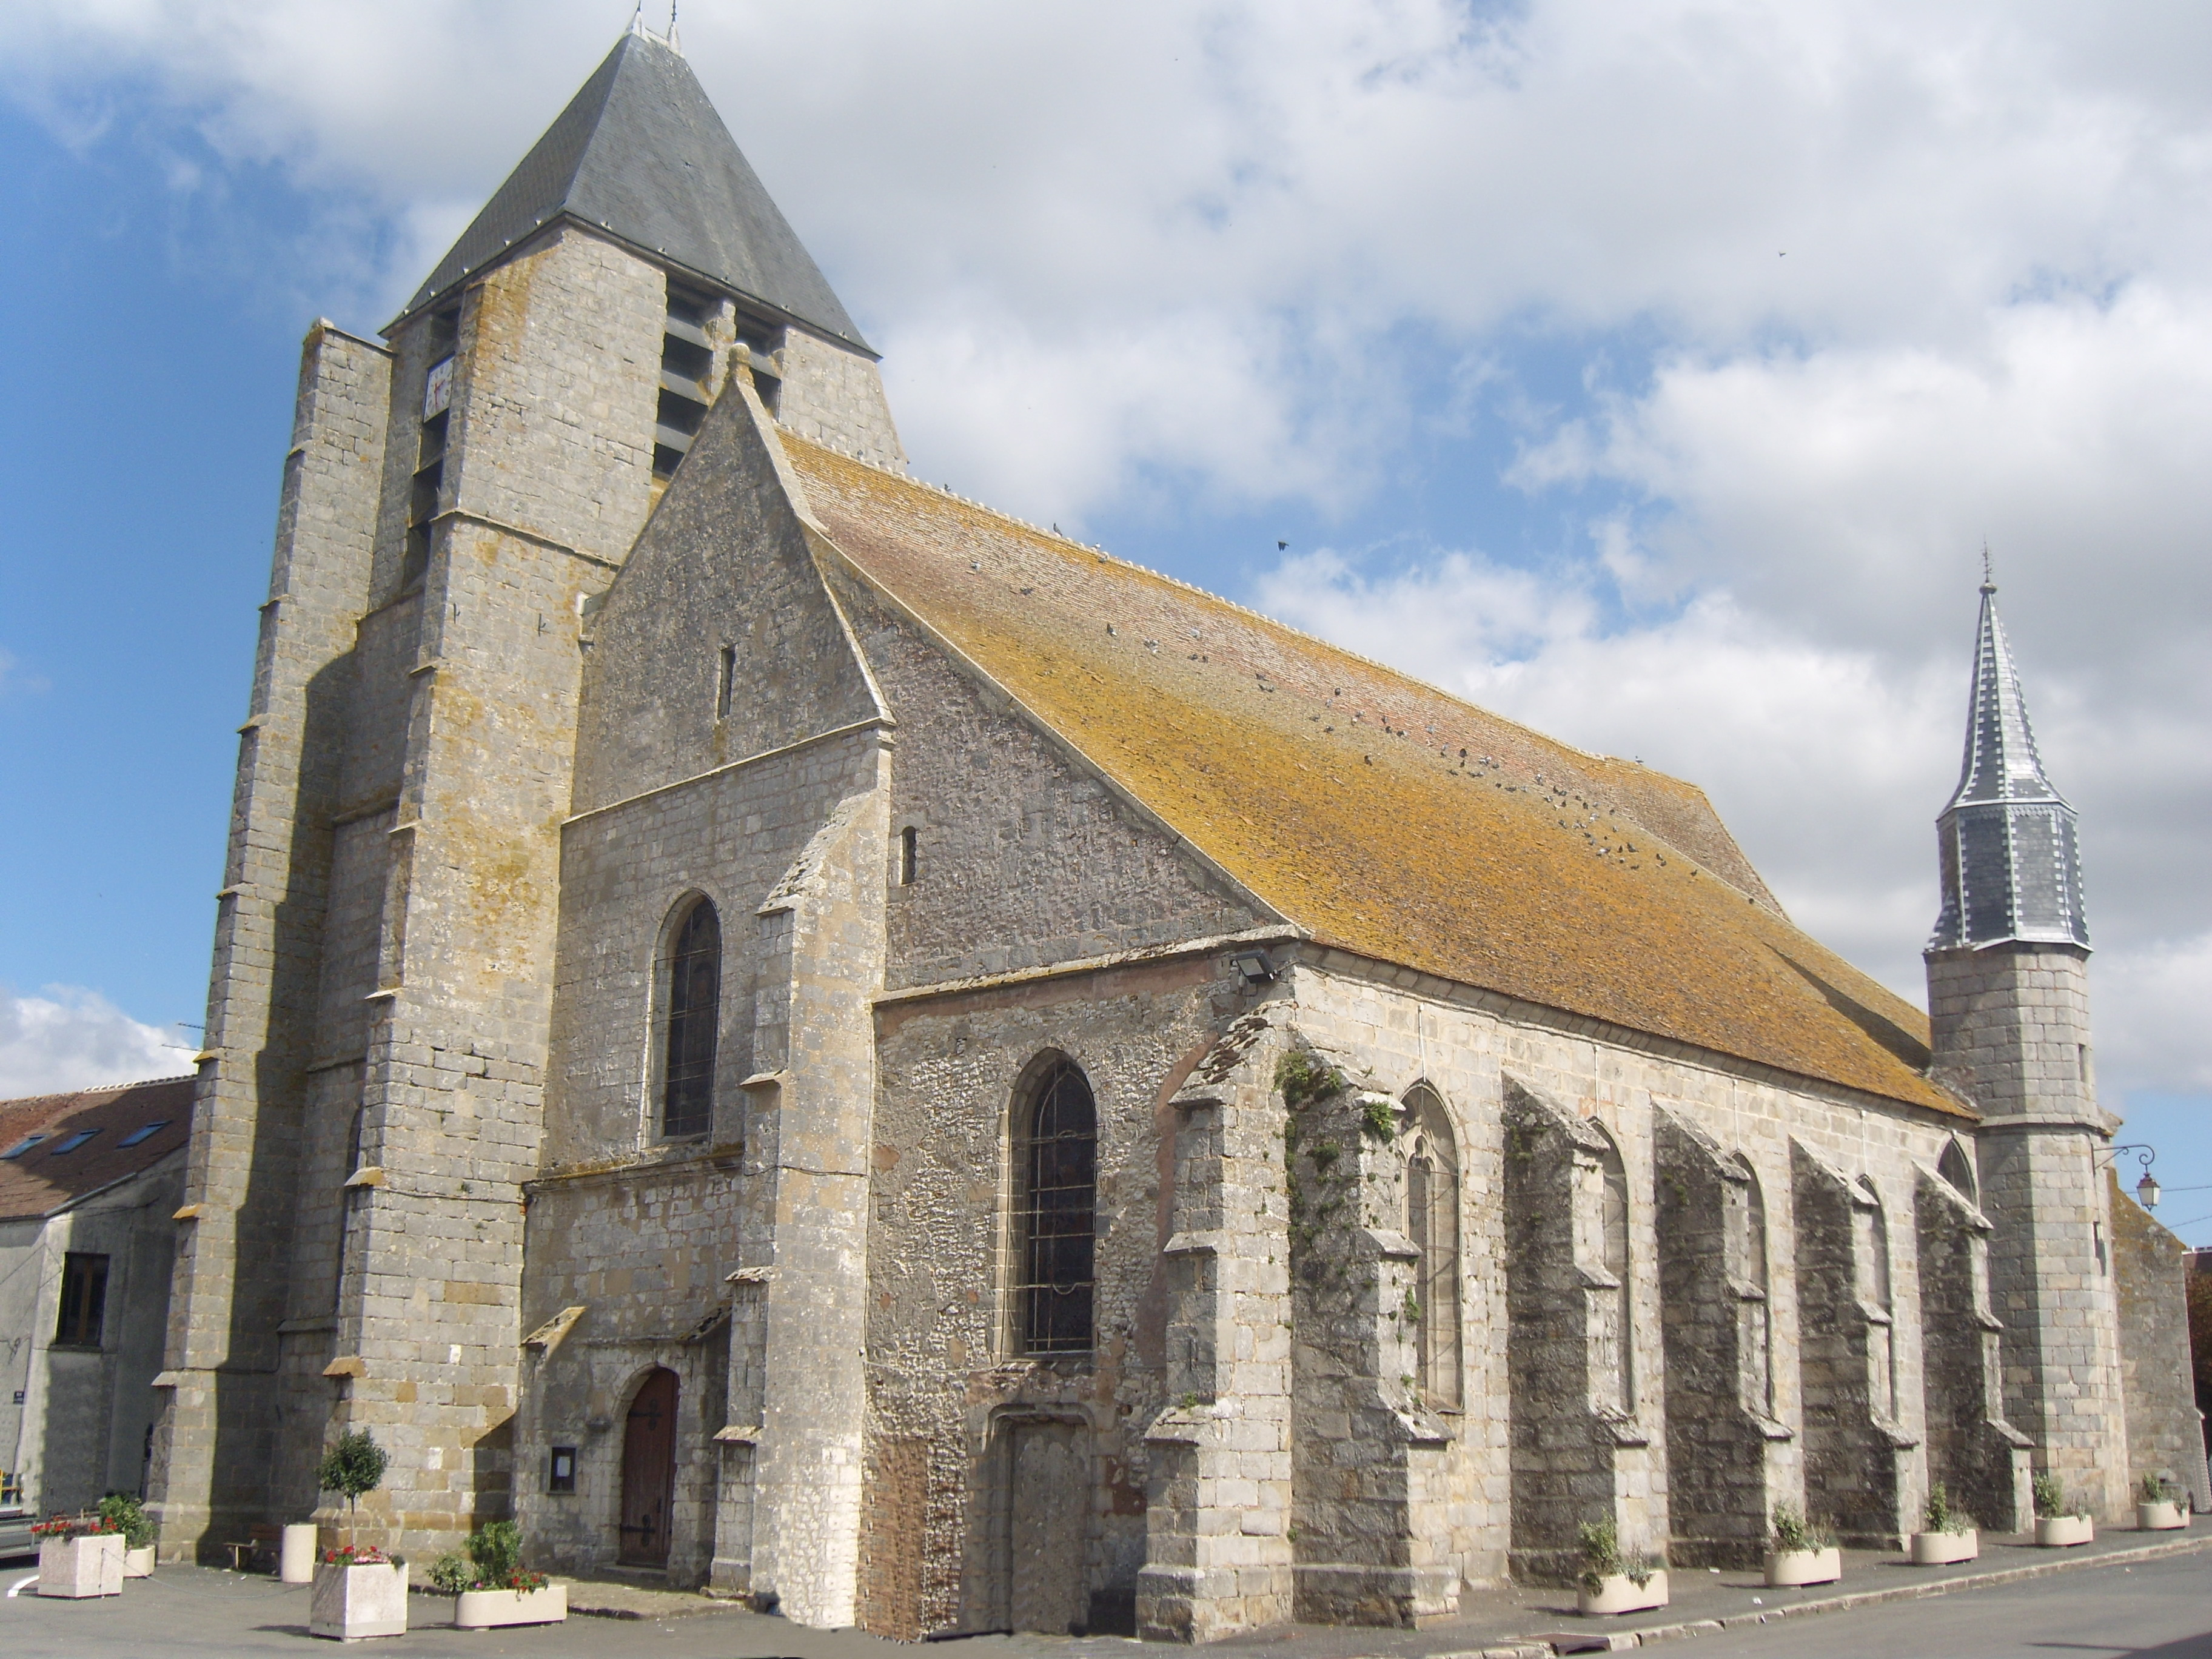 Vue extérieure de l'église St AubinLa construction primitive remonterait au XIe siècle, époque à laquelle l'église appartenait aux chapelains de la cathédrale de Reims. L’Eglise comporte trois nefs sans transept. L'église primitive était dans le collatéral sud. En 1392, la porte d’entrée de ce collatéral sud fut bouchée et le collatéral nord fut prolongé pour l’installation d’une chapelle. Le bas-côté a été séparé du chœur par une balustrade et le clocher qui le surmontait a été déplacé. On distingue encore l’ancien portail roman et les bases romanes des piliers circulaires édifiés lorsqu'au XVe siècle les nefs ont été refaites. Le choeur, voûté en pierre, ne fut retouché que lors de la restauration générale de 1723. On accomoda alors l’ancien style du XV au goût de la Renaissance du XVIe.